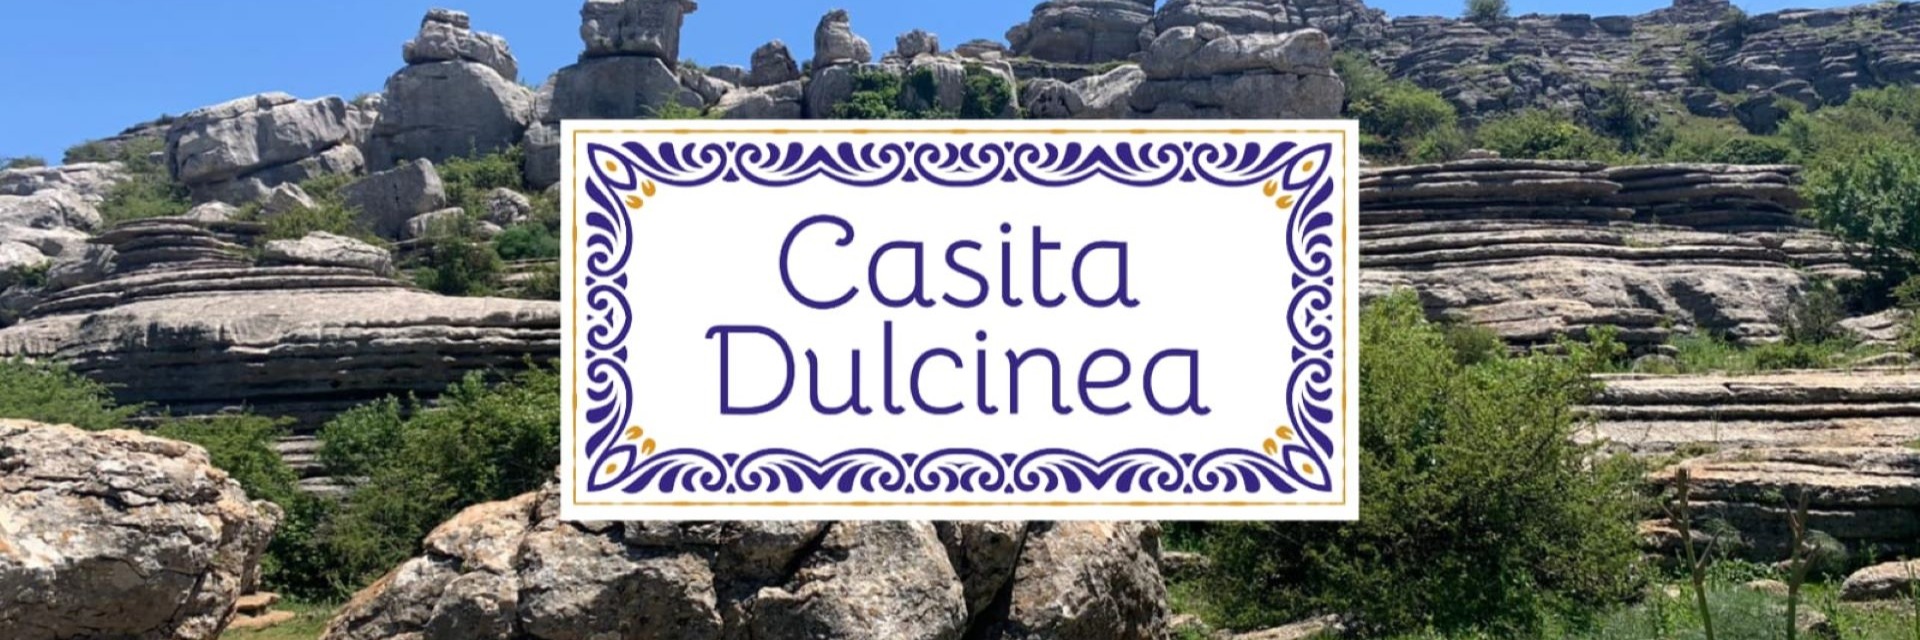 Casita Dulcinea